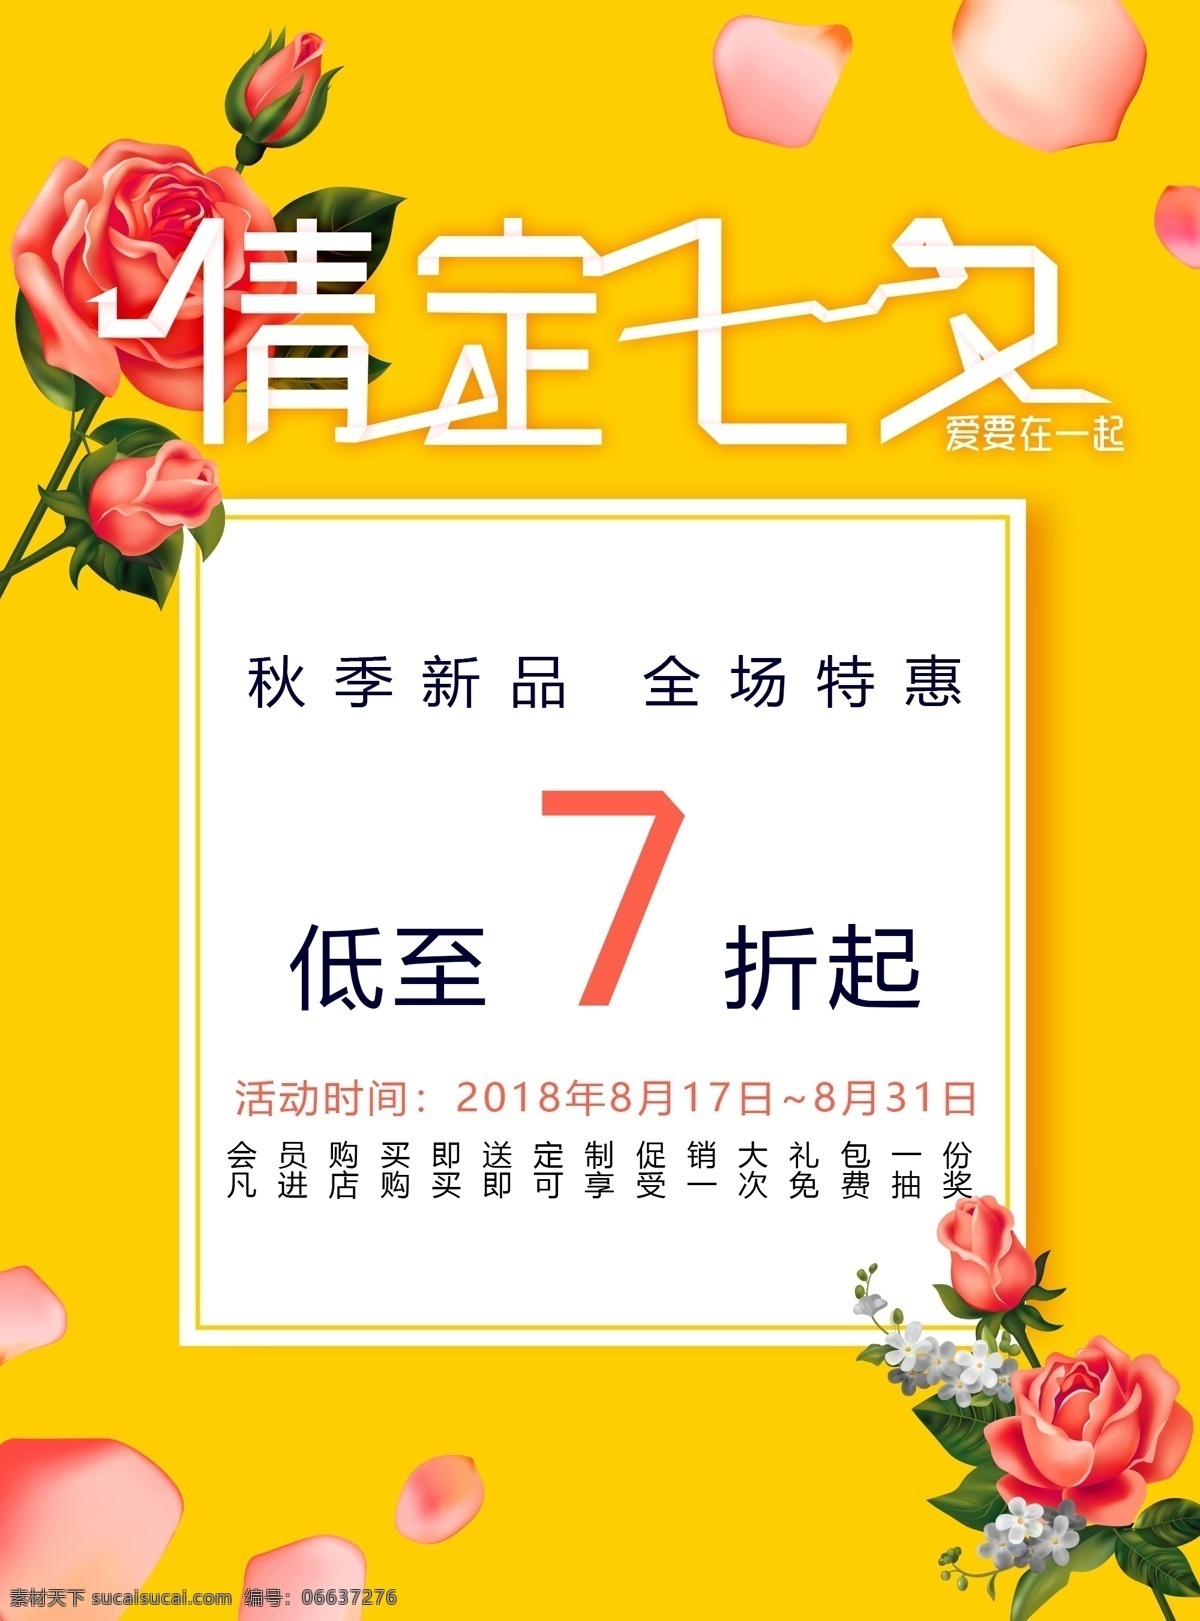 情 定 七夕 打折 促销 海报 黄色 撞 色 玫瑰 手绘 花瓣 节日 秋季新品 活动